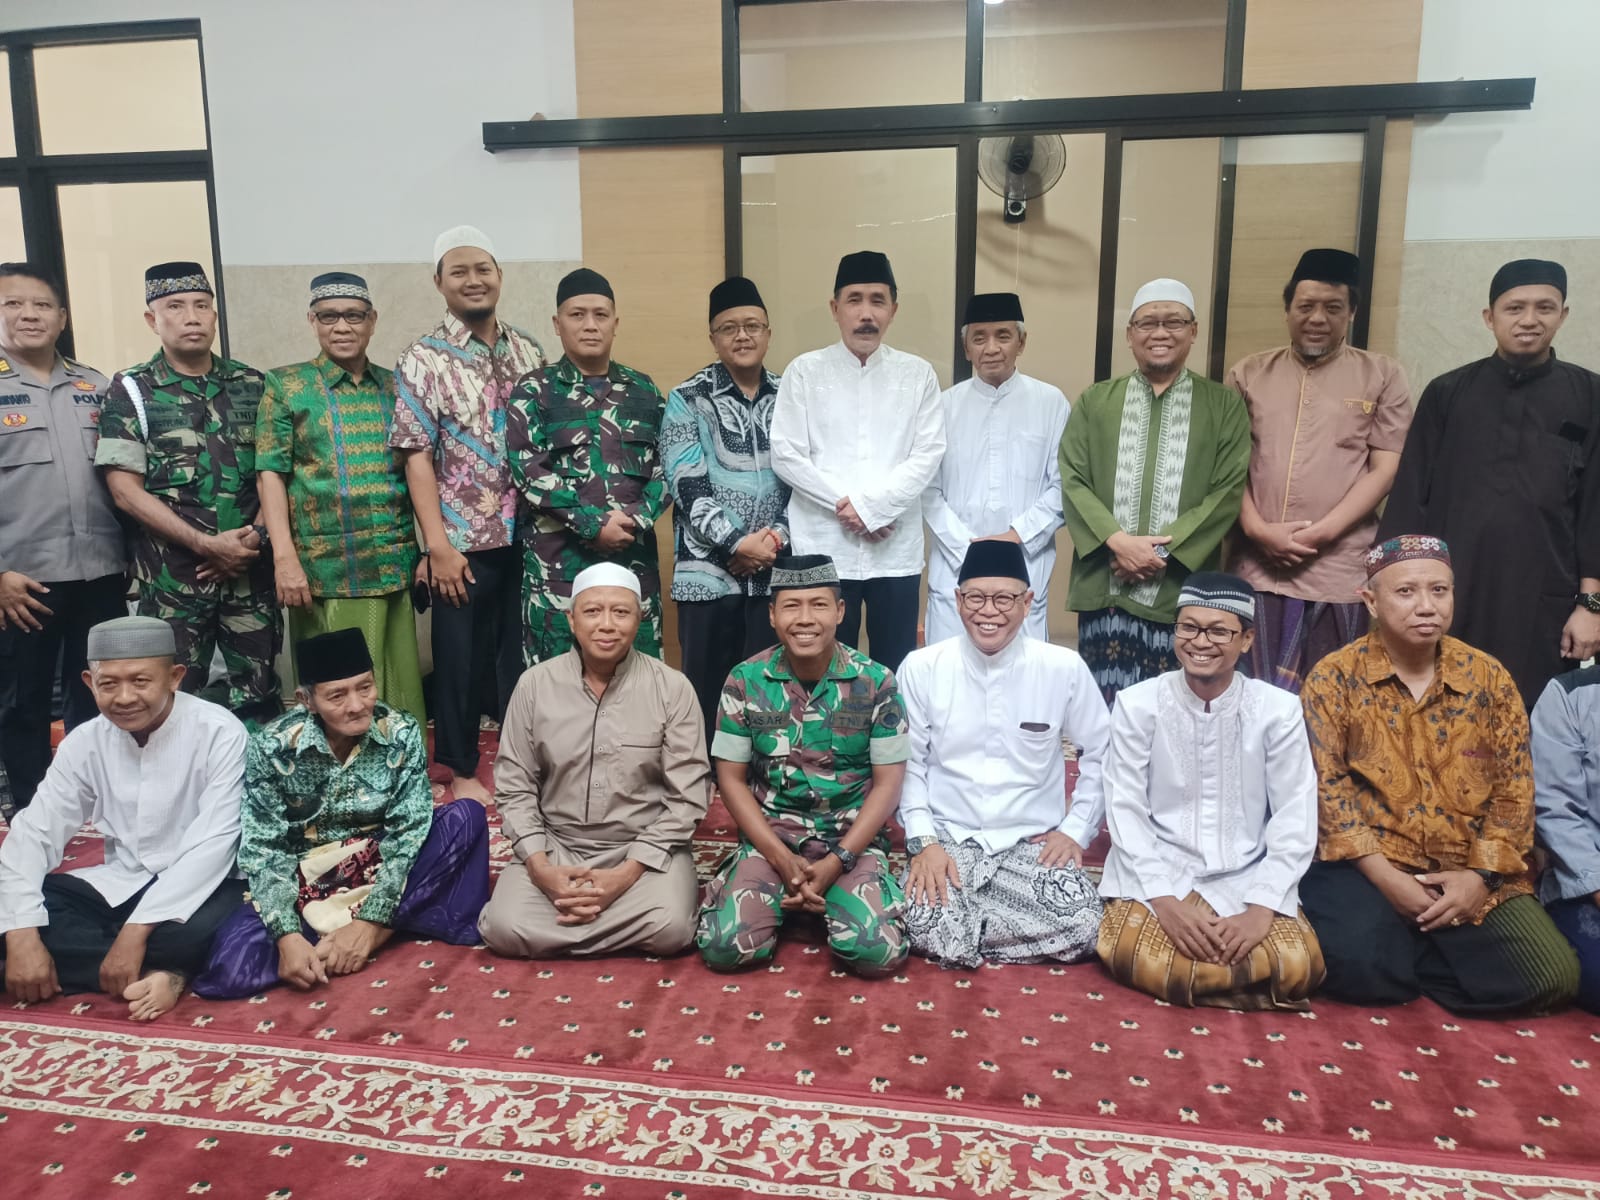 Bersama Forkopimda, Kodim 0735/Surakarta Gelar Safari Sholat Jumat di Masjid Asy-Syifa